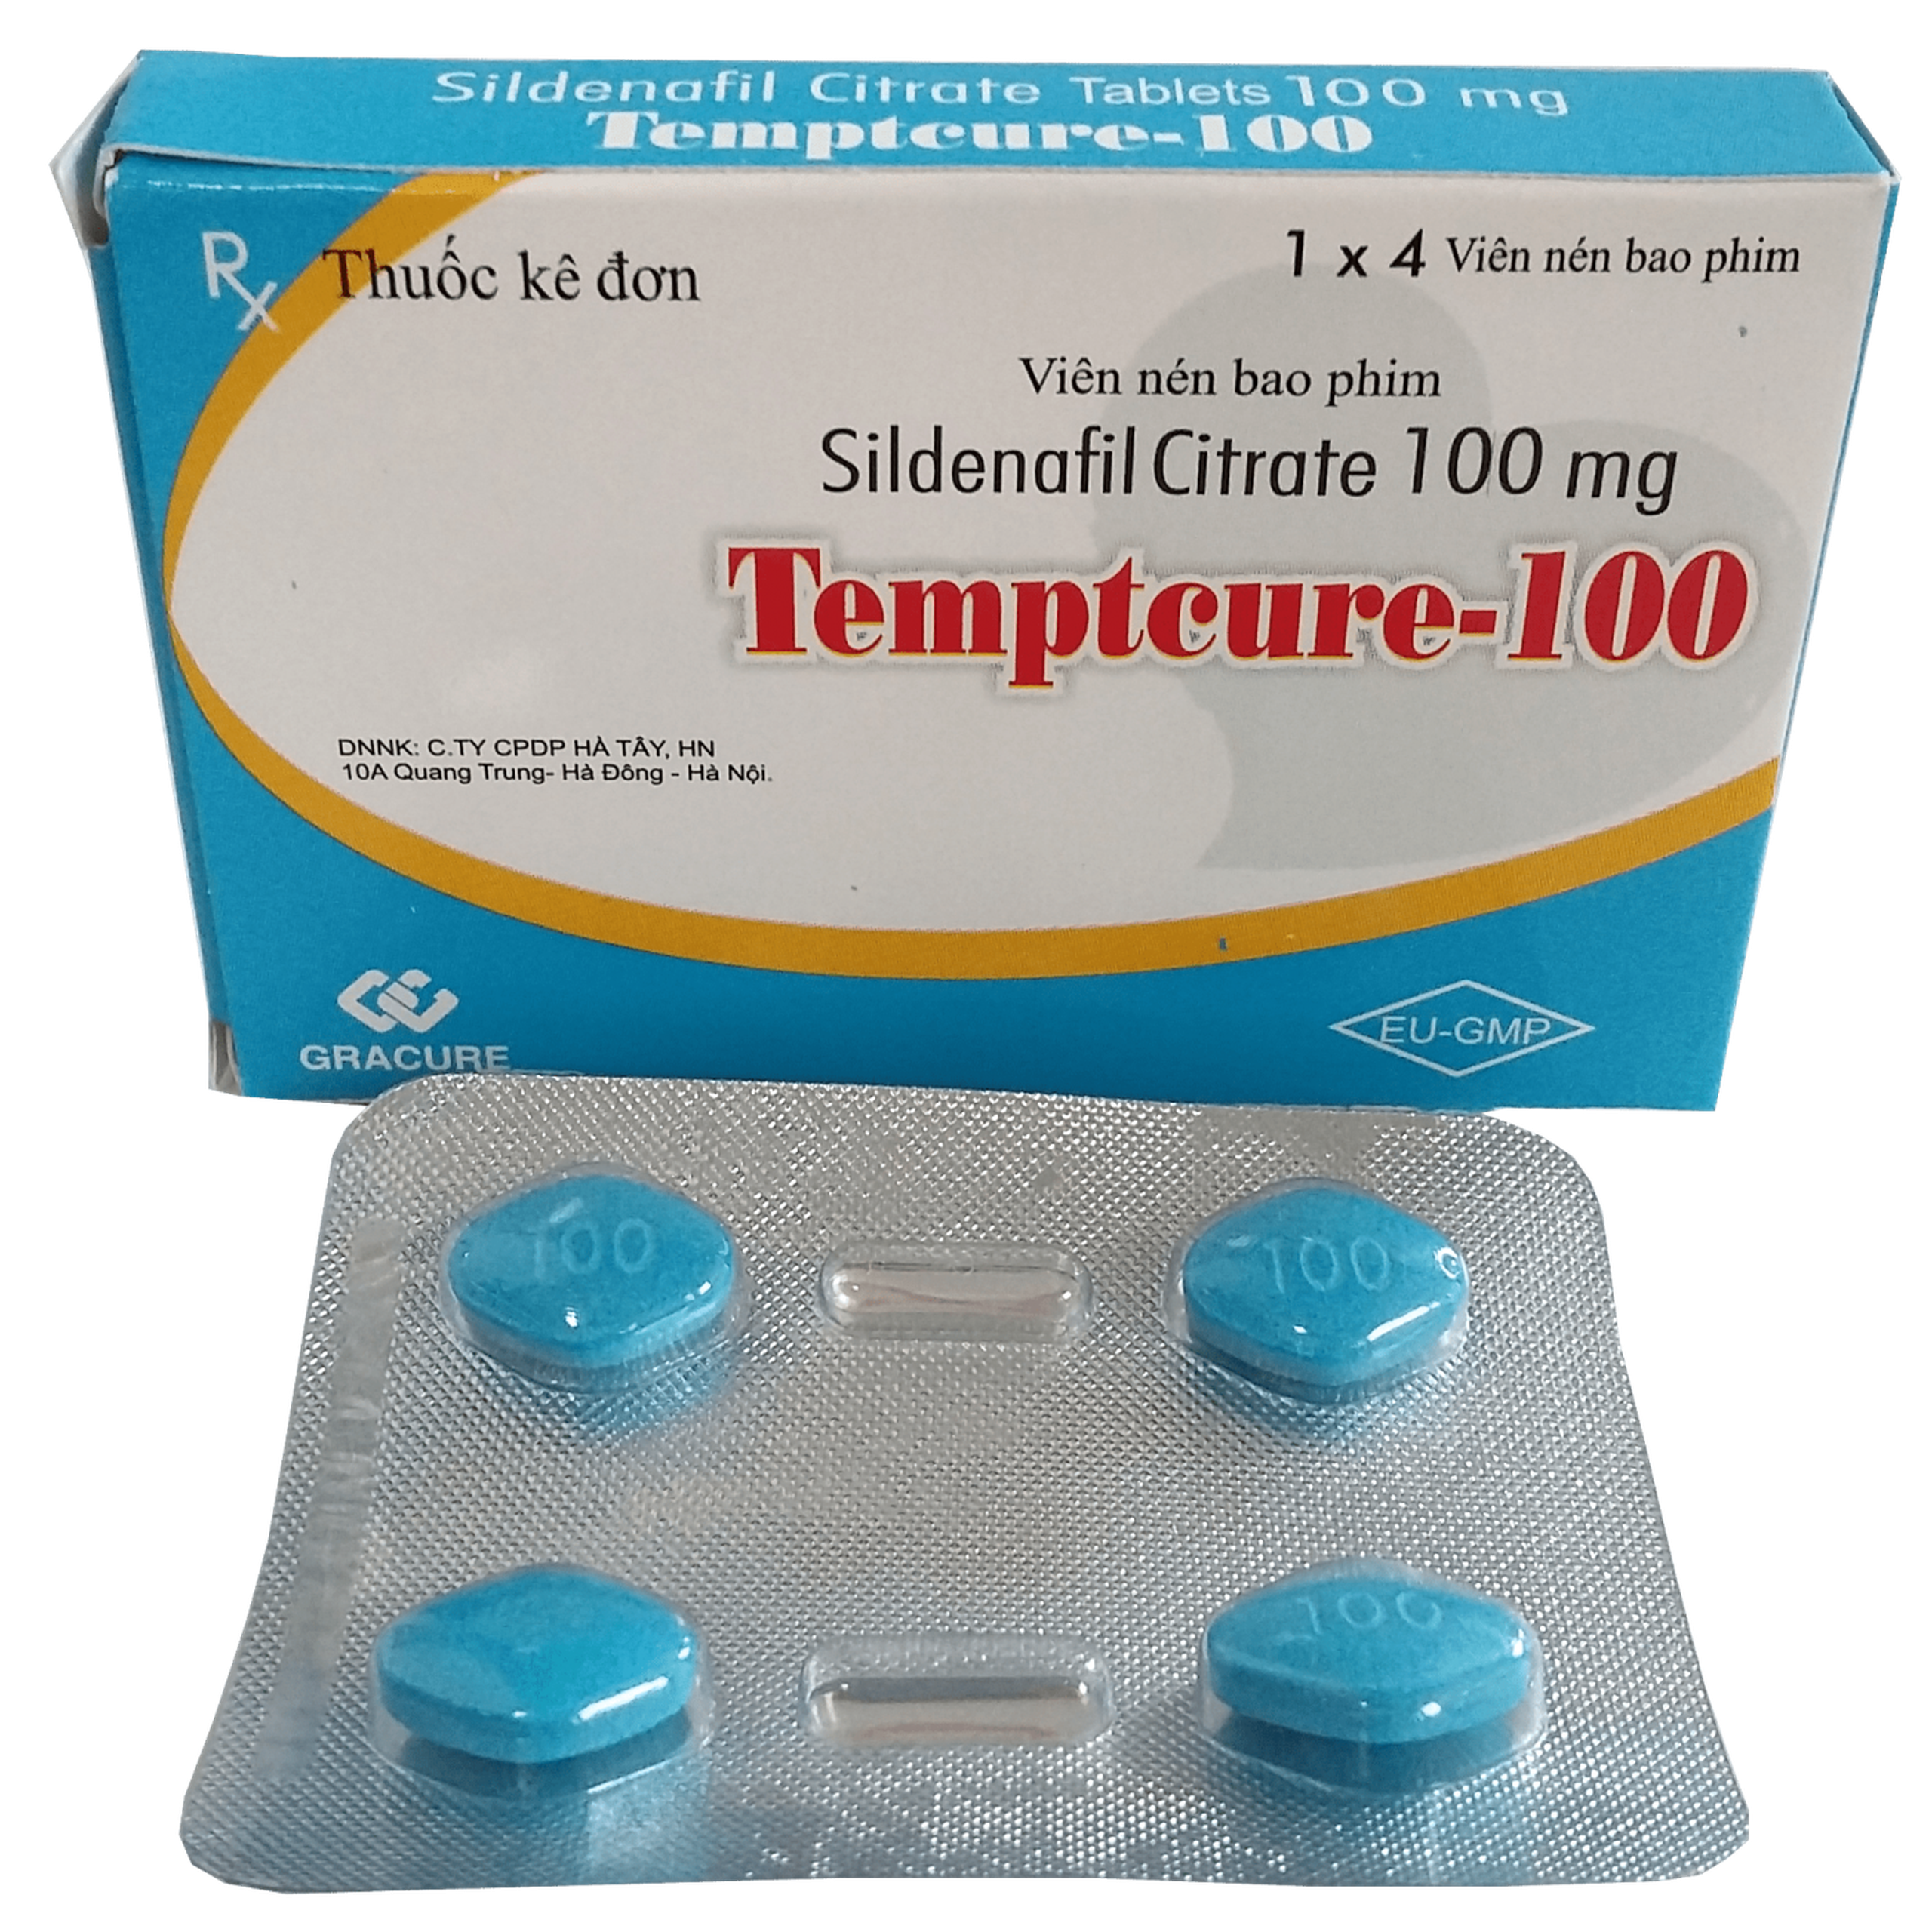 Thuốc Temptcure-100 Gracure điều trị rối loạn cương dương (1 vỉ x 4 viên)